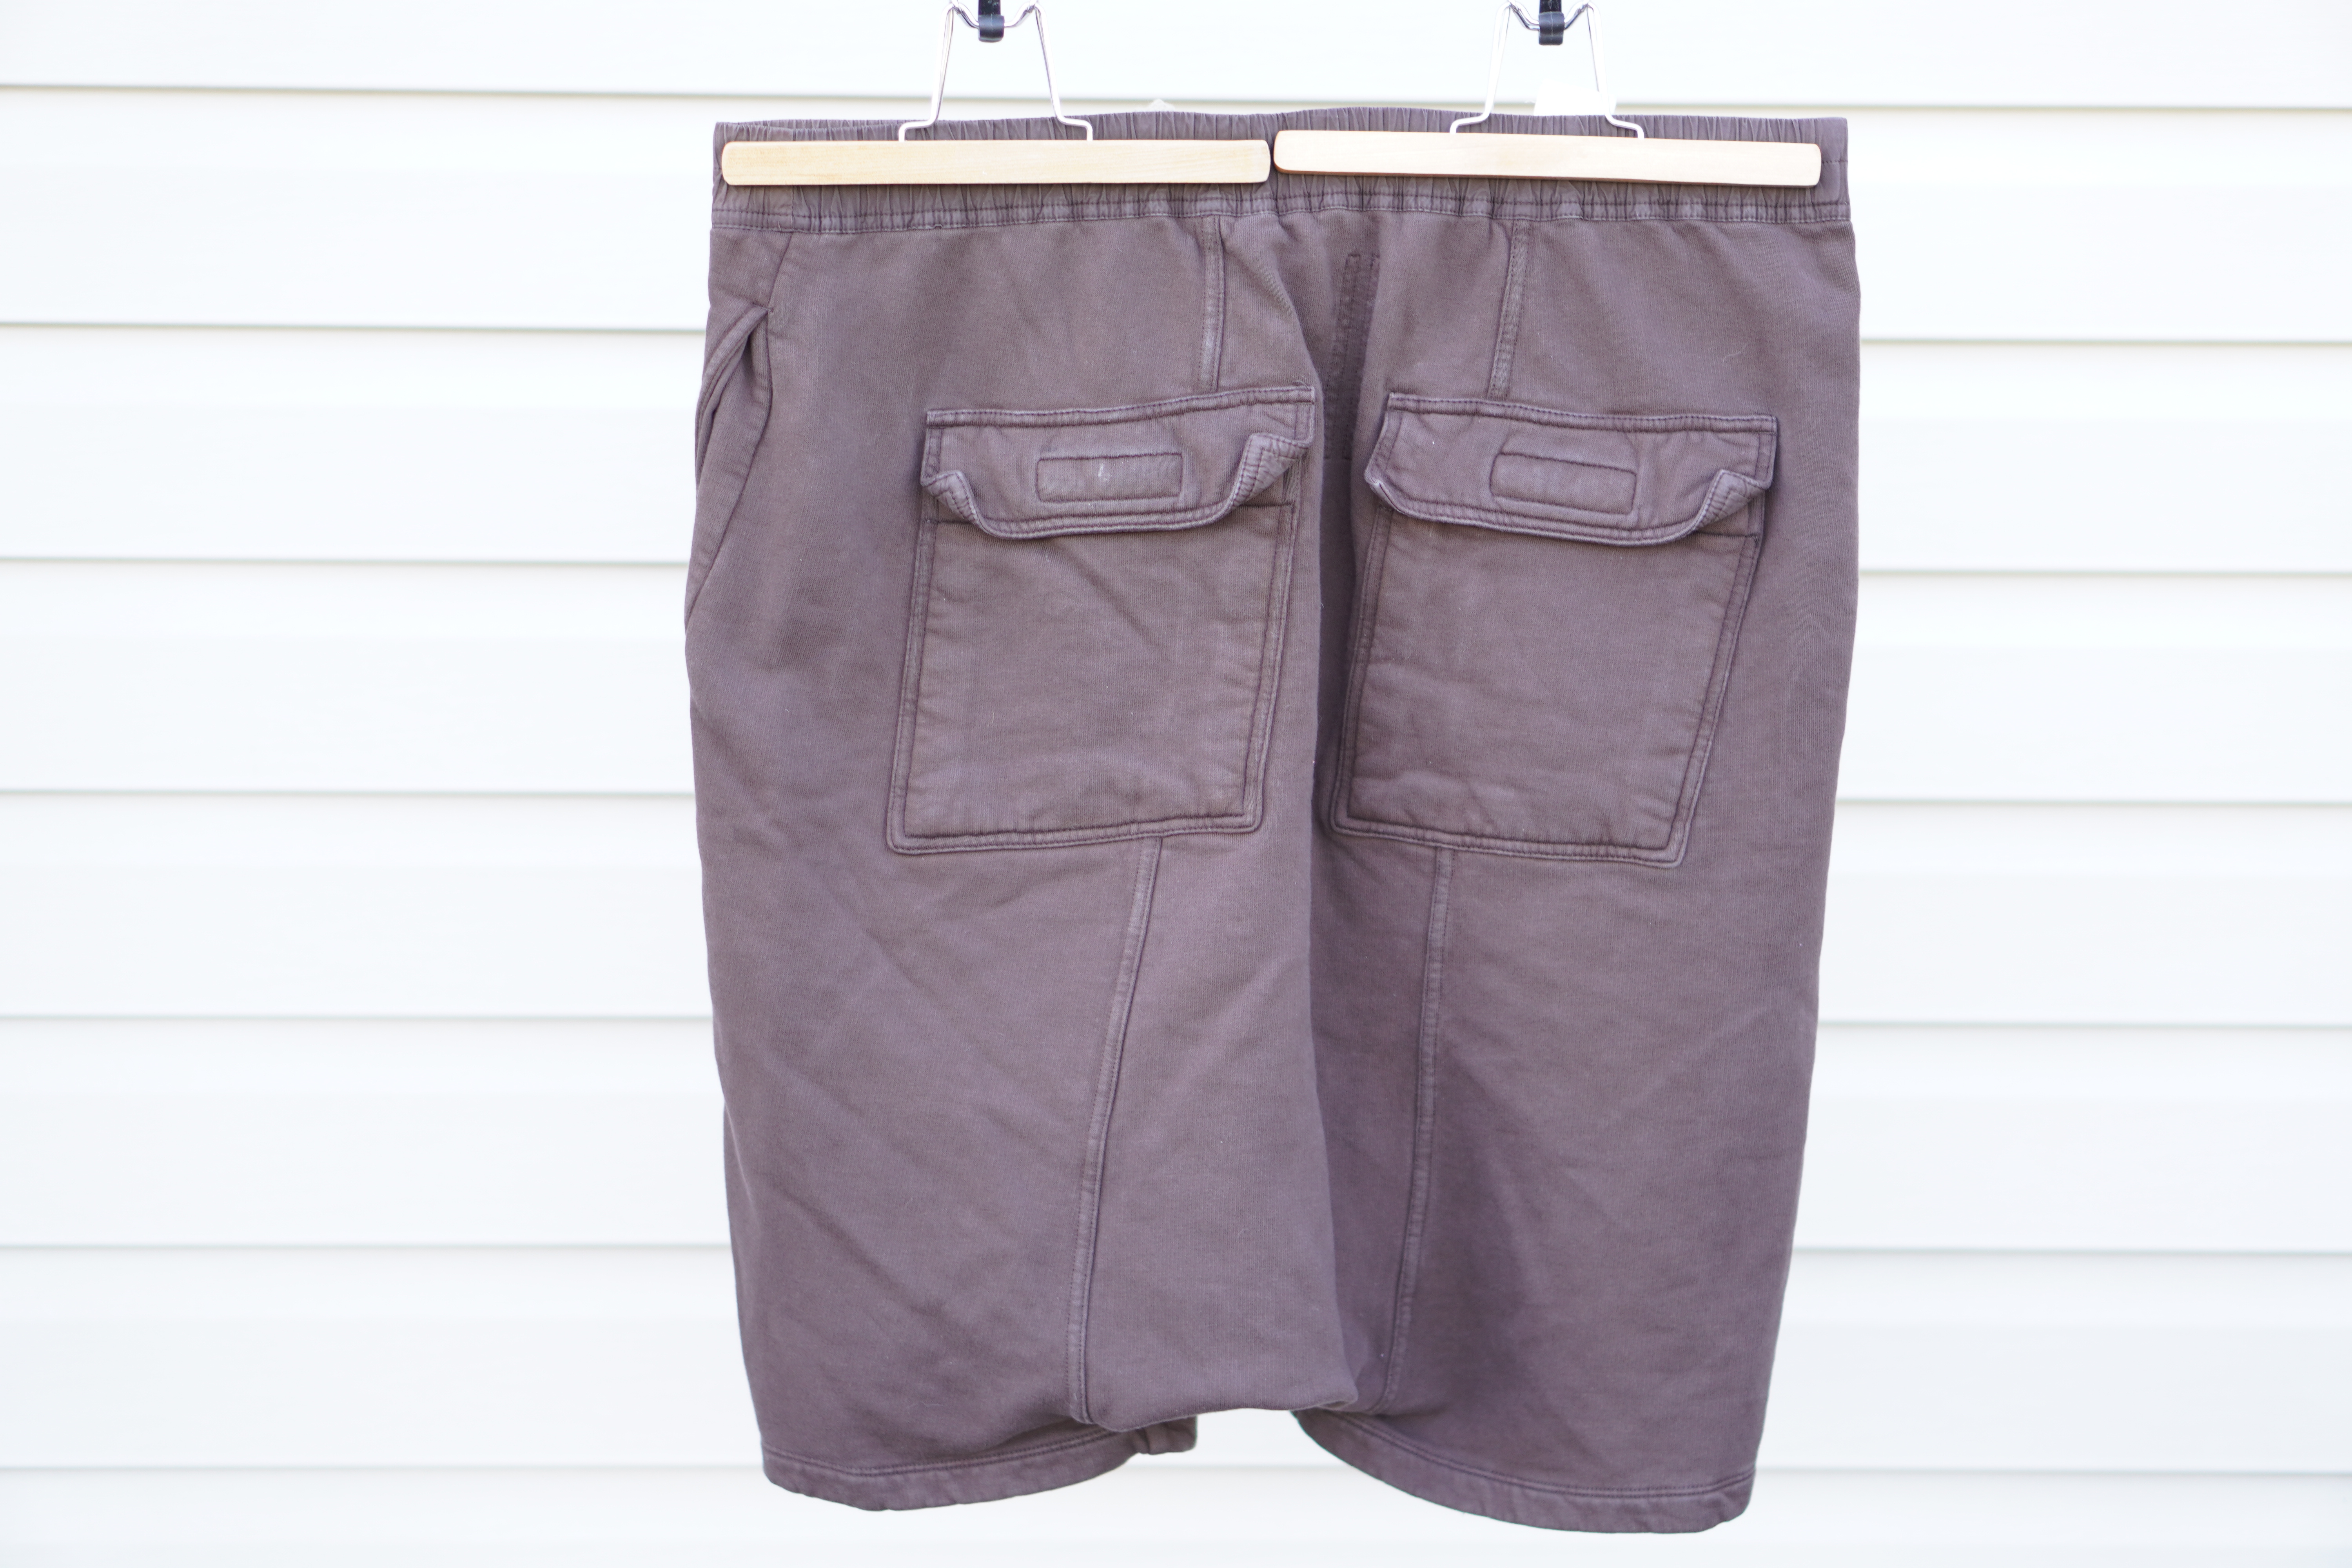 Rick Shorts Drop Crotch Cotton Macassar Brown Large - 2